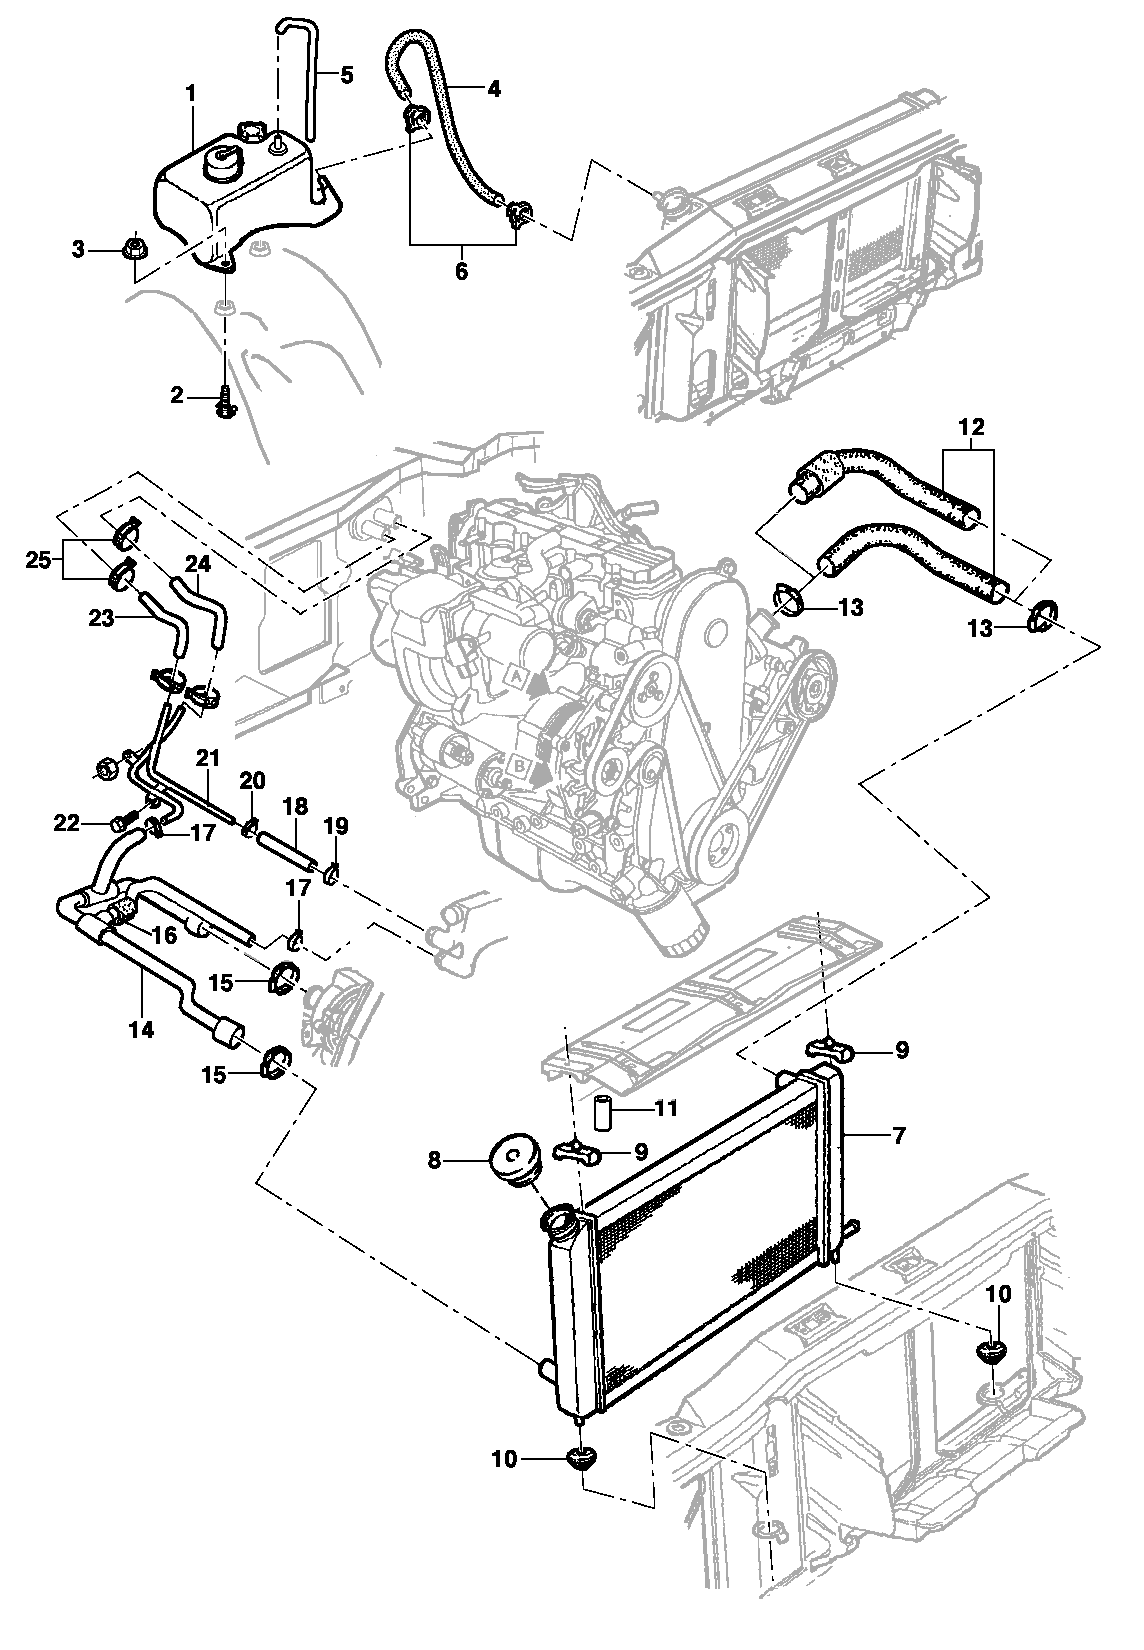 Радиатор, шланги радиатора и расширительный бачок - двигатель LM3